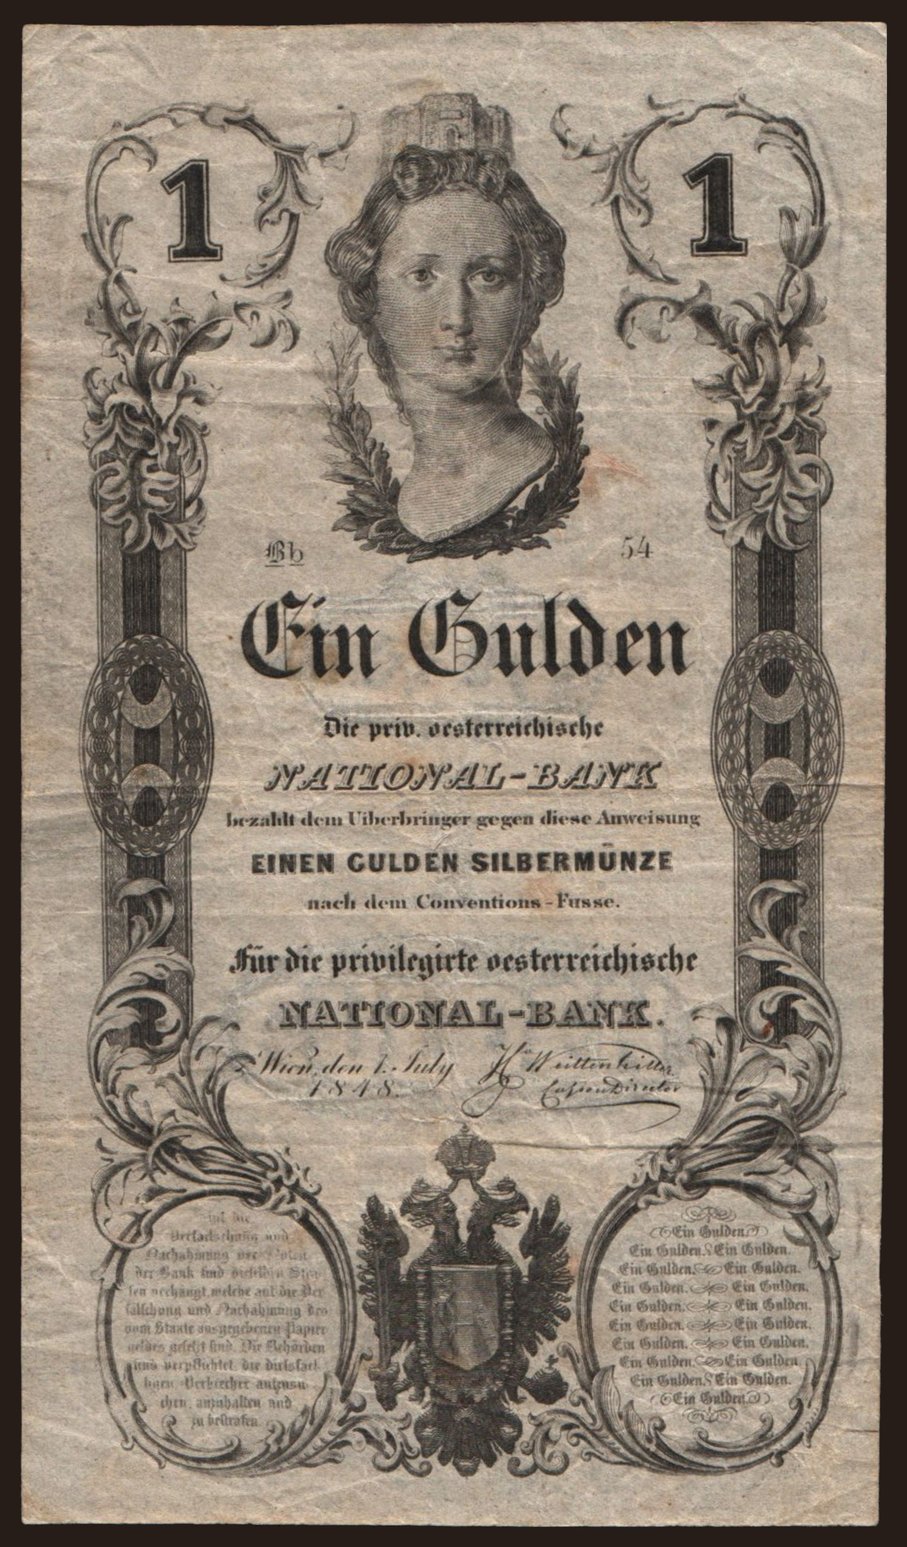 1 gulden, 1848